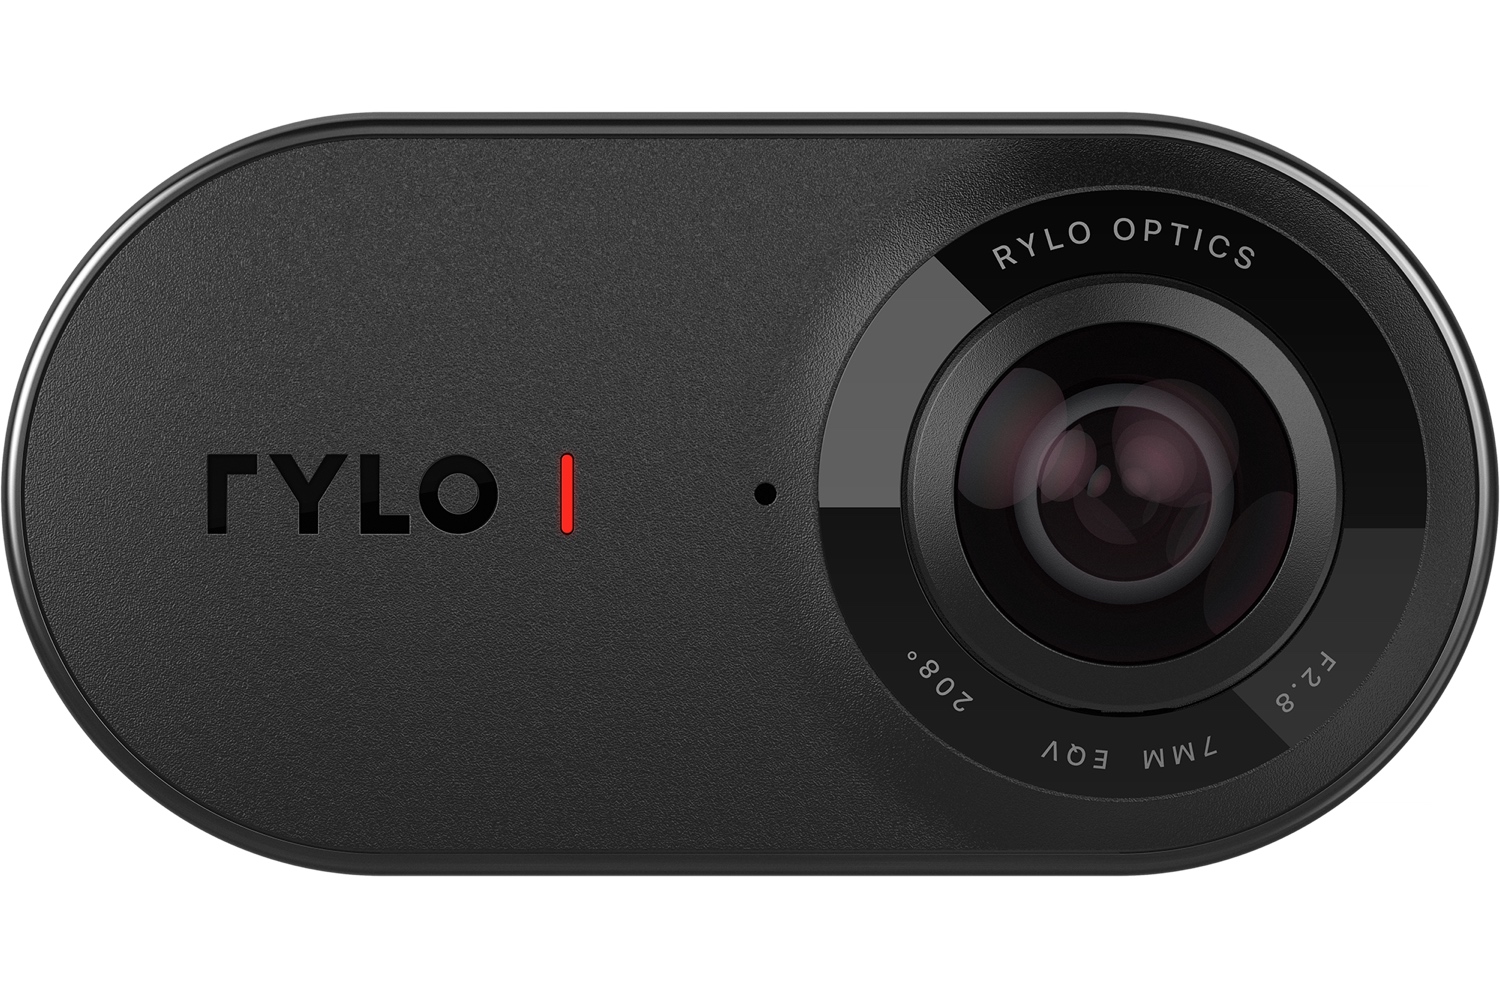 rylo 360 camera announced 7